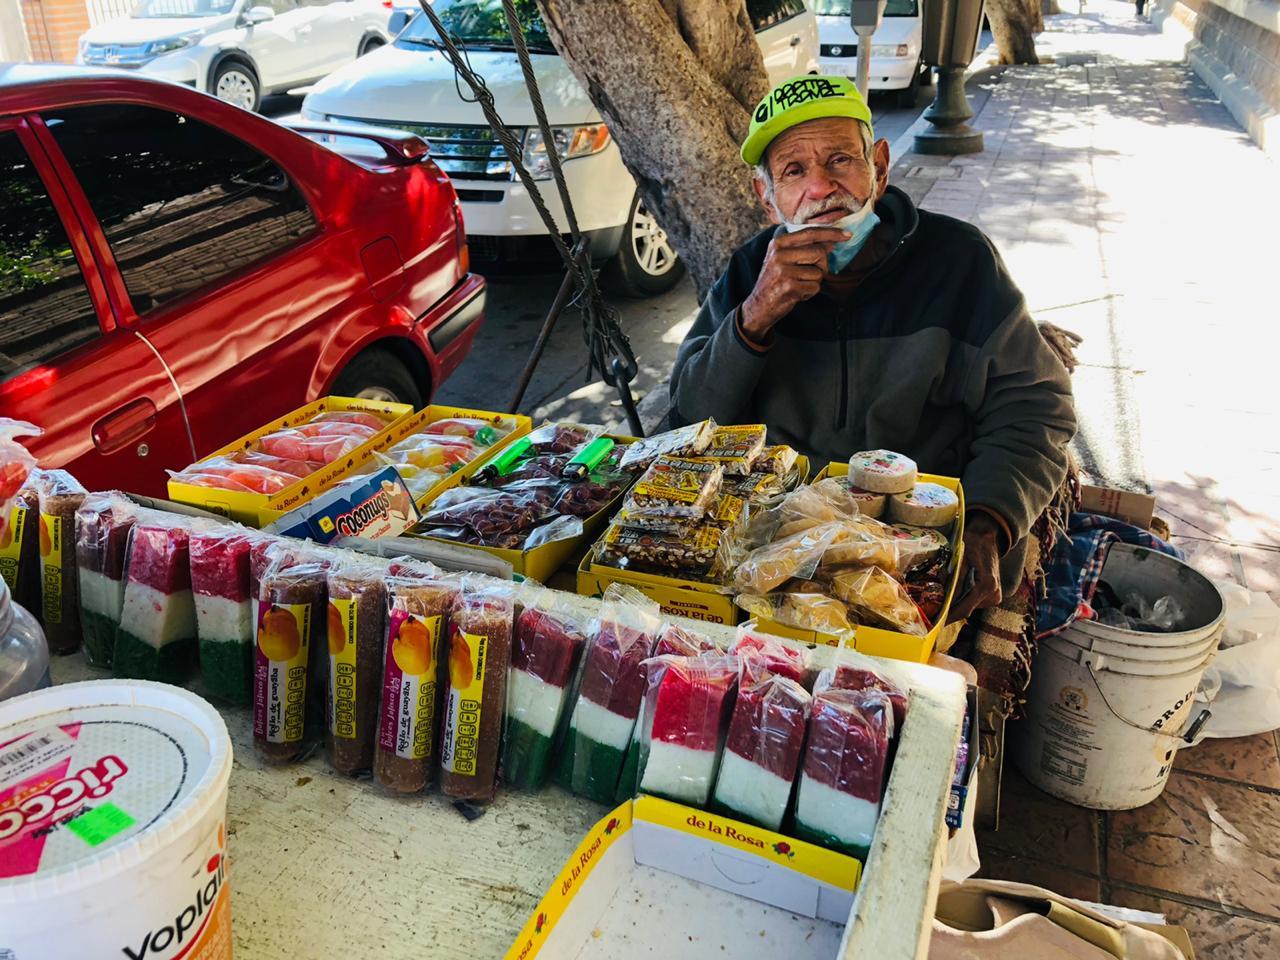 A sus 69 años, Don José vende dulces en el Centro para sacar el sustento diario